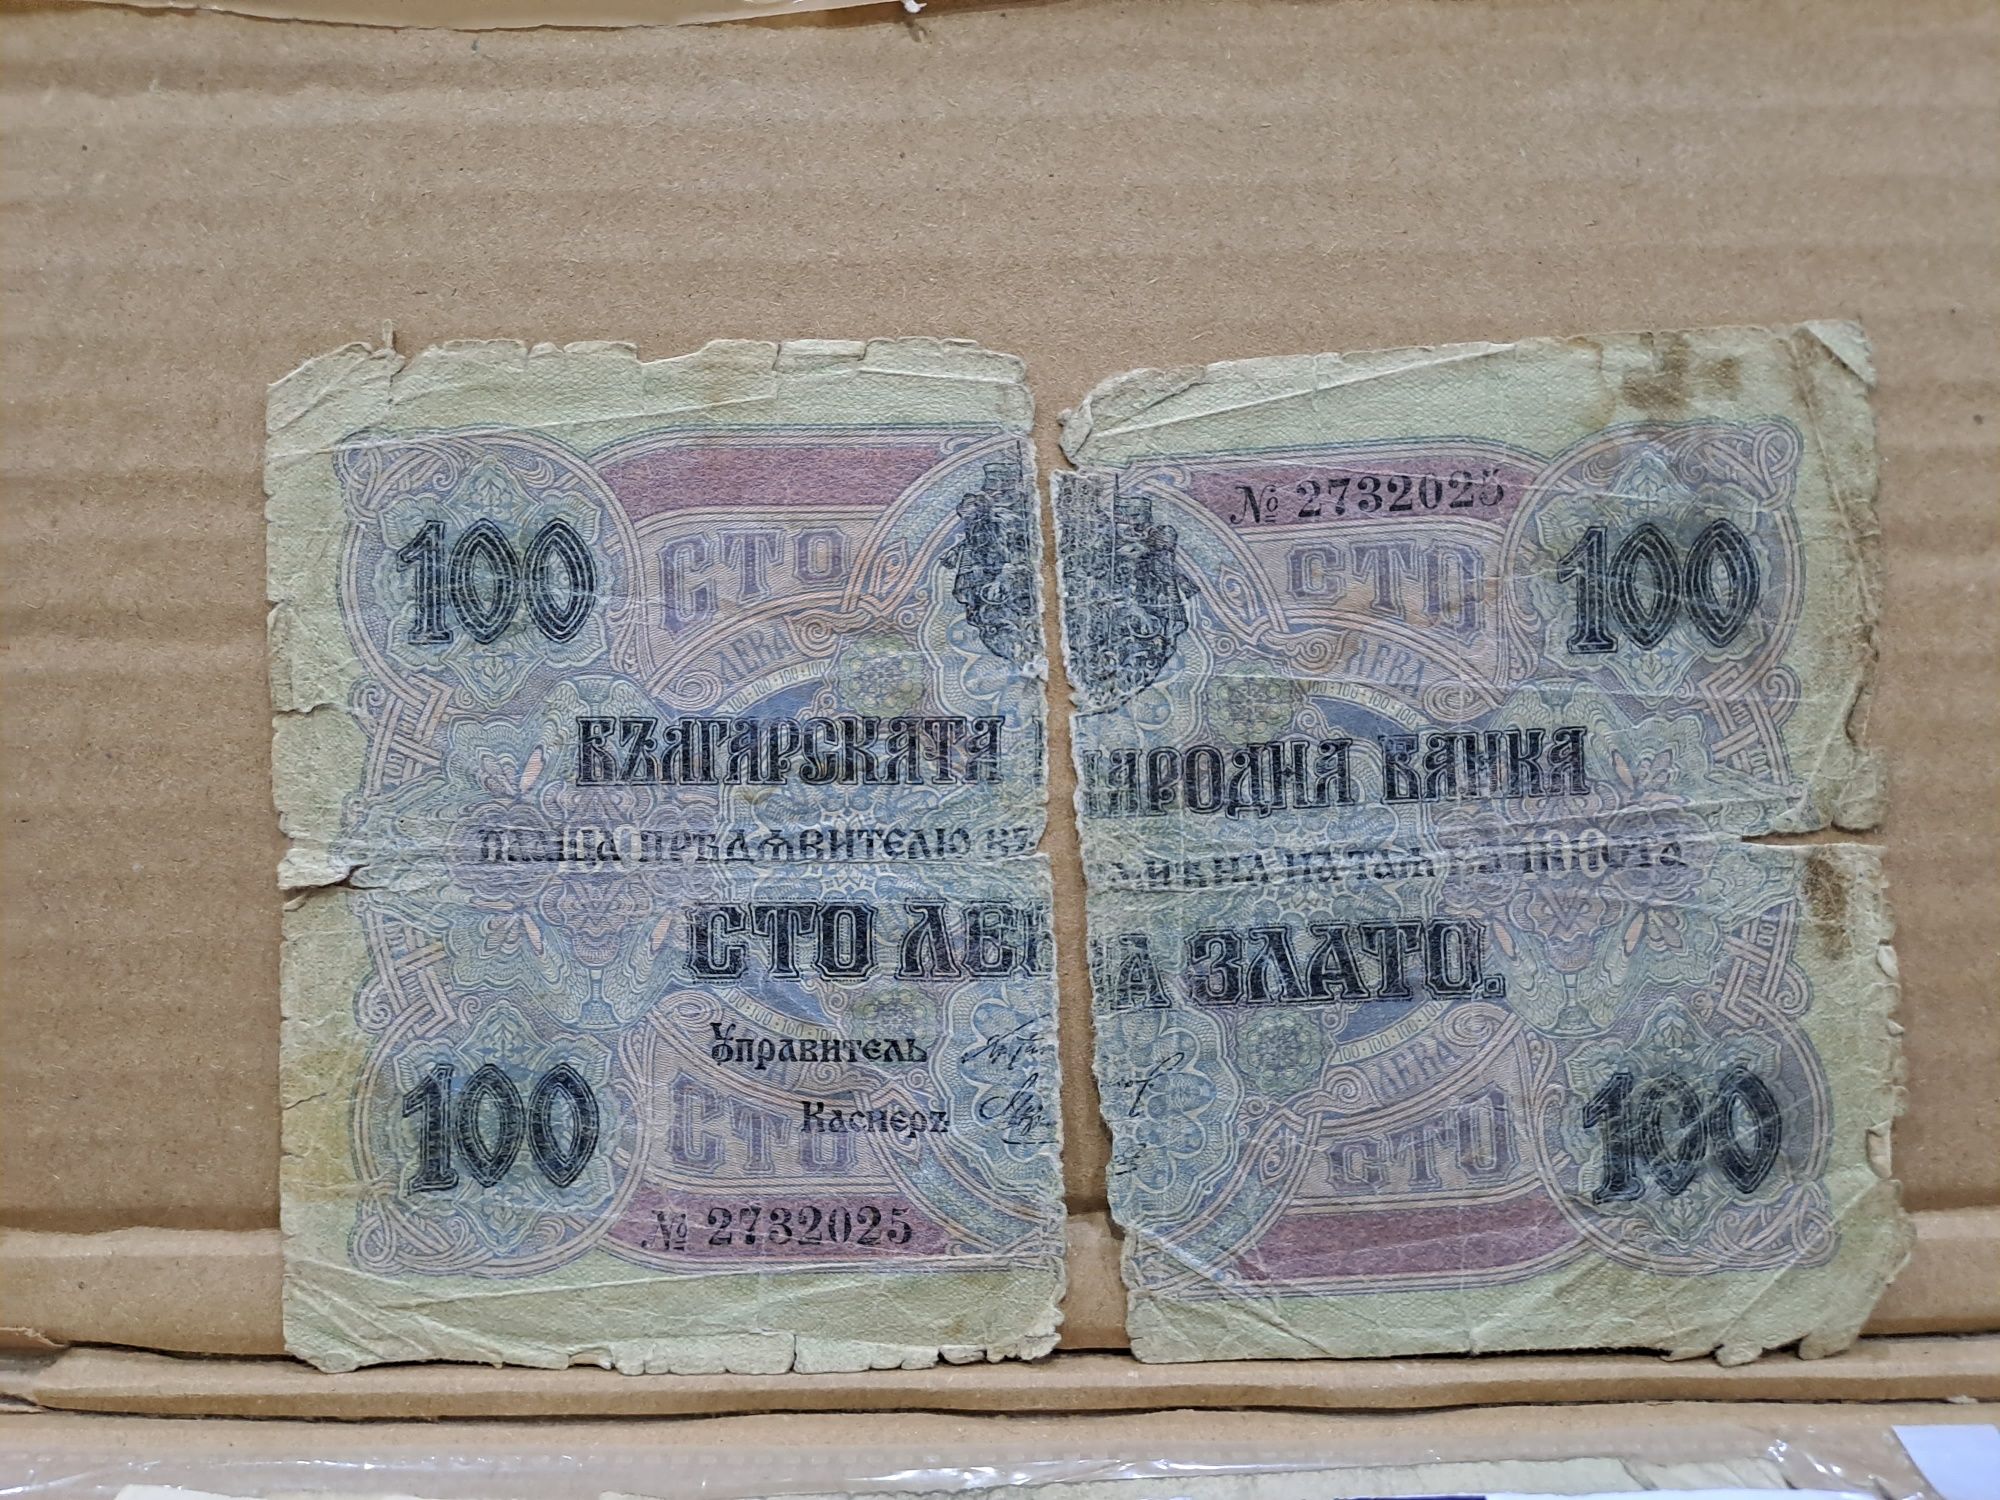 Български банкноти стари пари лот сет колекция банкнота